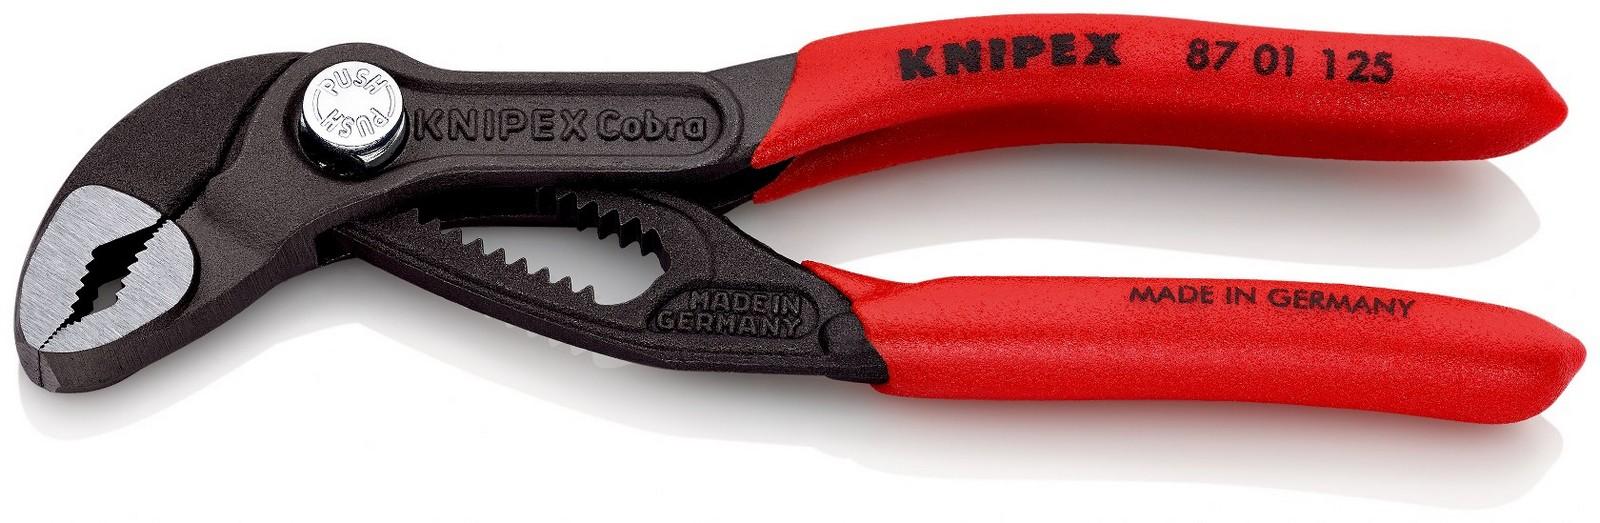 KNIPEX Papagaj - cevna klešta Cobra 1 87 01 125 crvena